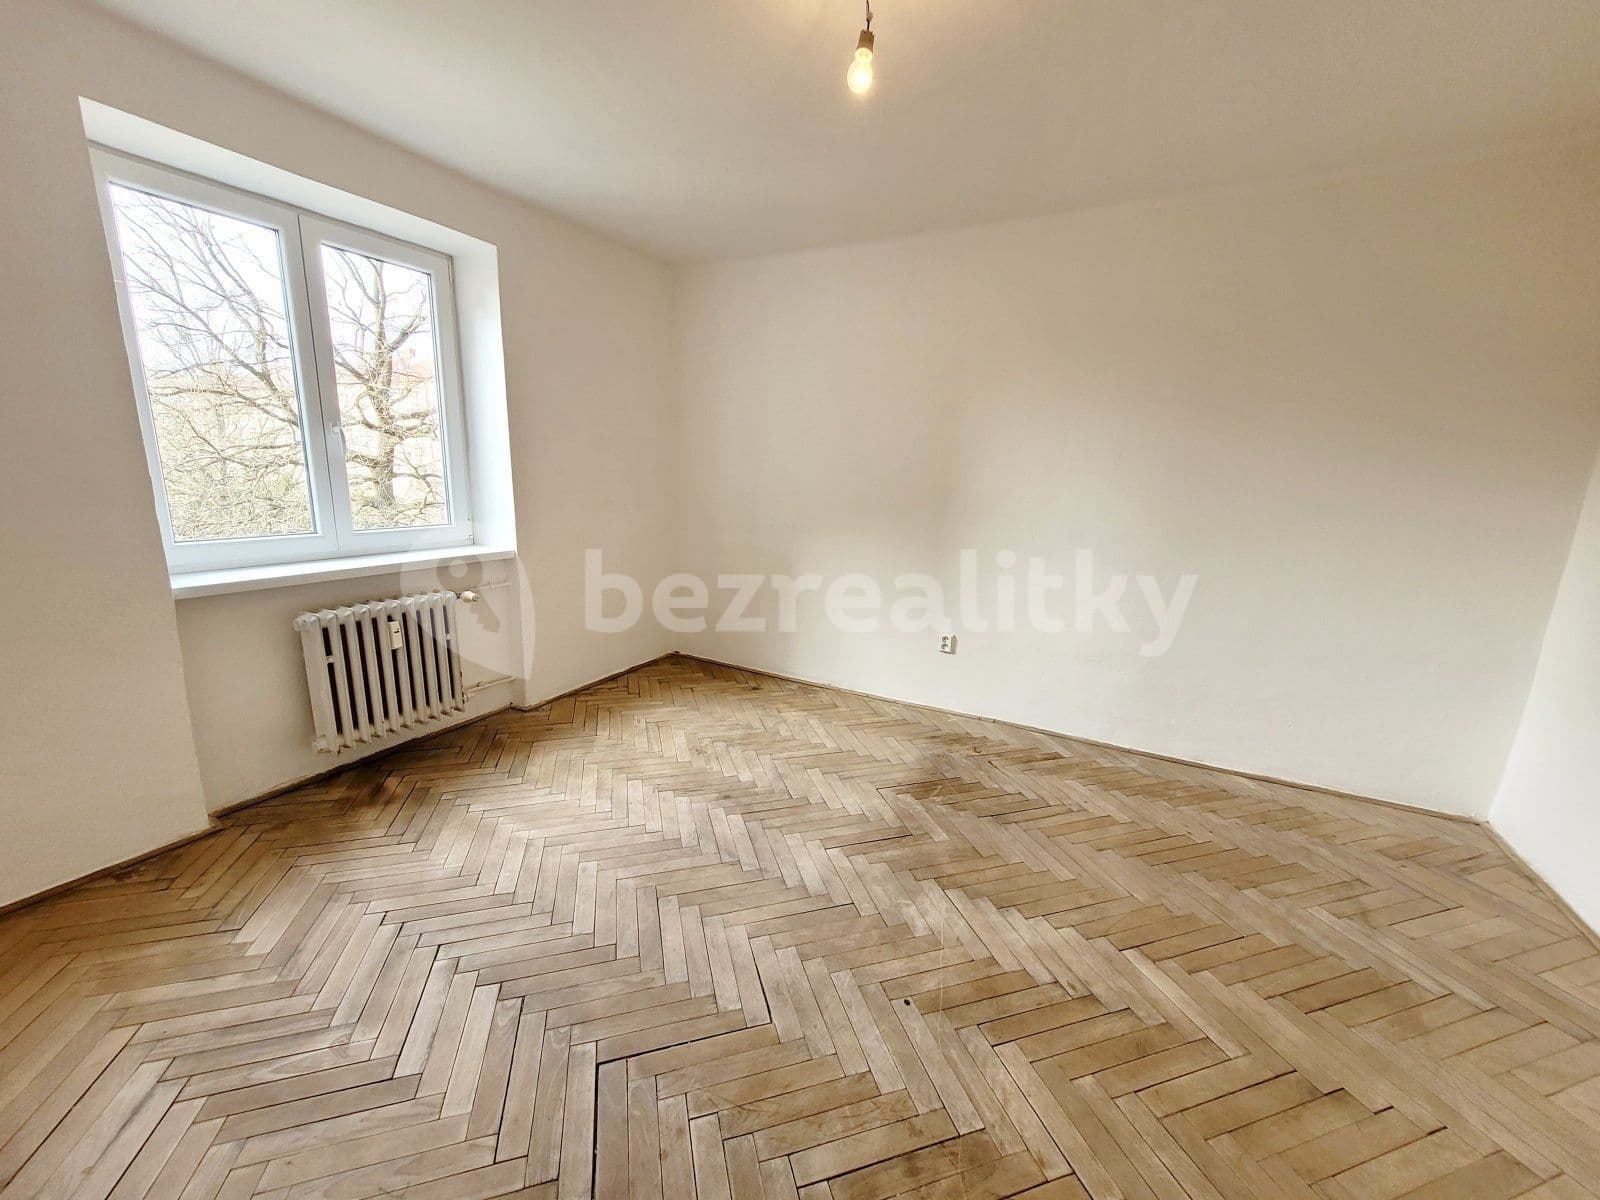 2 bedroom flat to rent, 55 m², Anglická, Havířov, Moravskoslezský Region